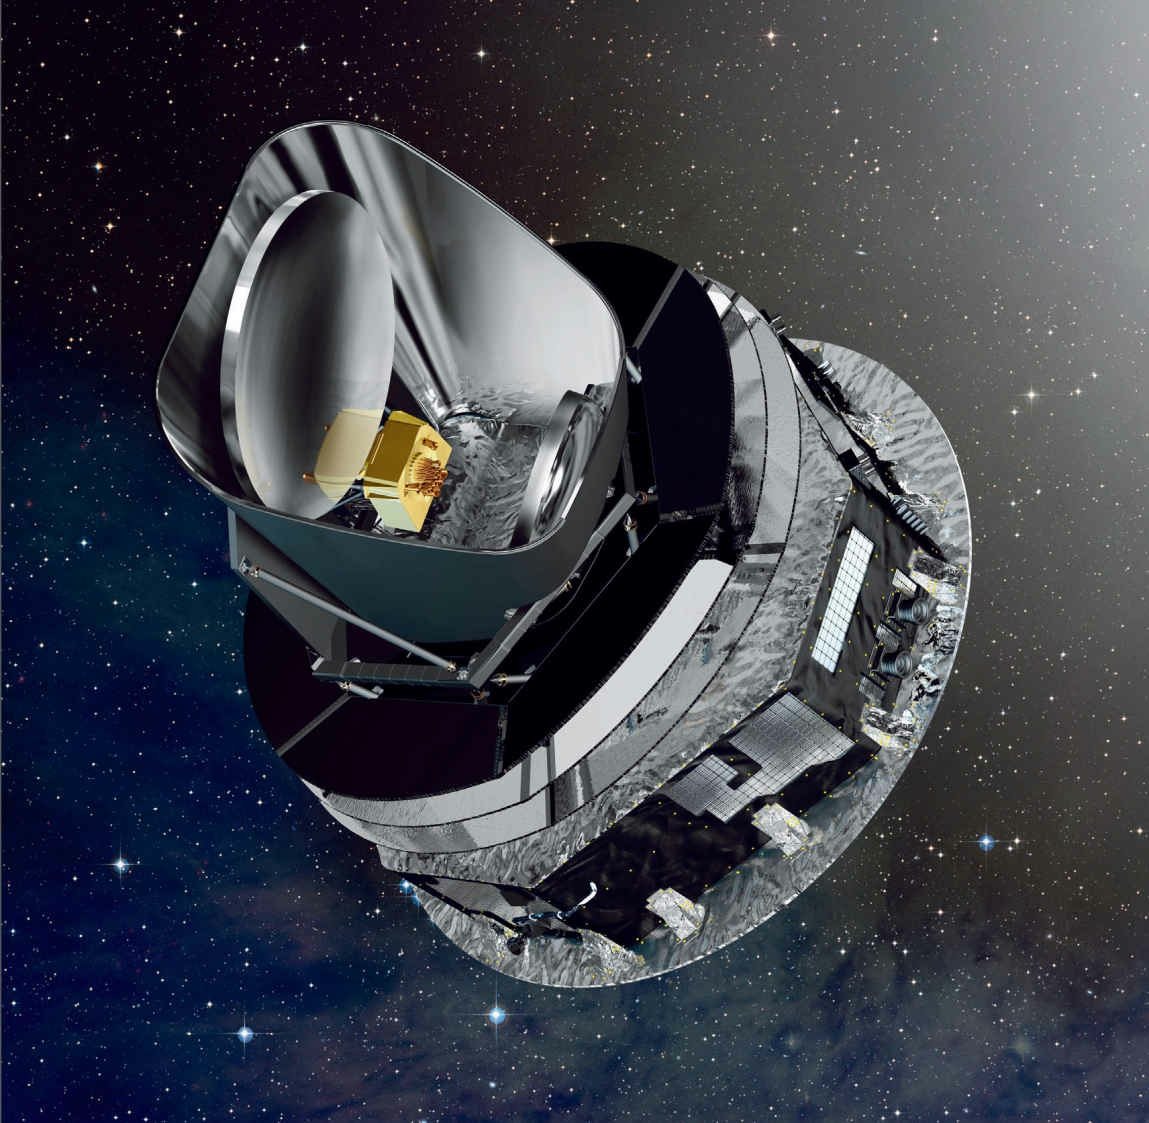  2009年5月14日，欧洲航天局普朗克太空望远镜搭载阿丽亚娜5型运载火箭，从圭亚那航天中心发射升空，于2013年10月23日停止运行